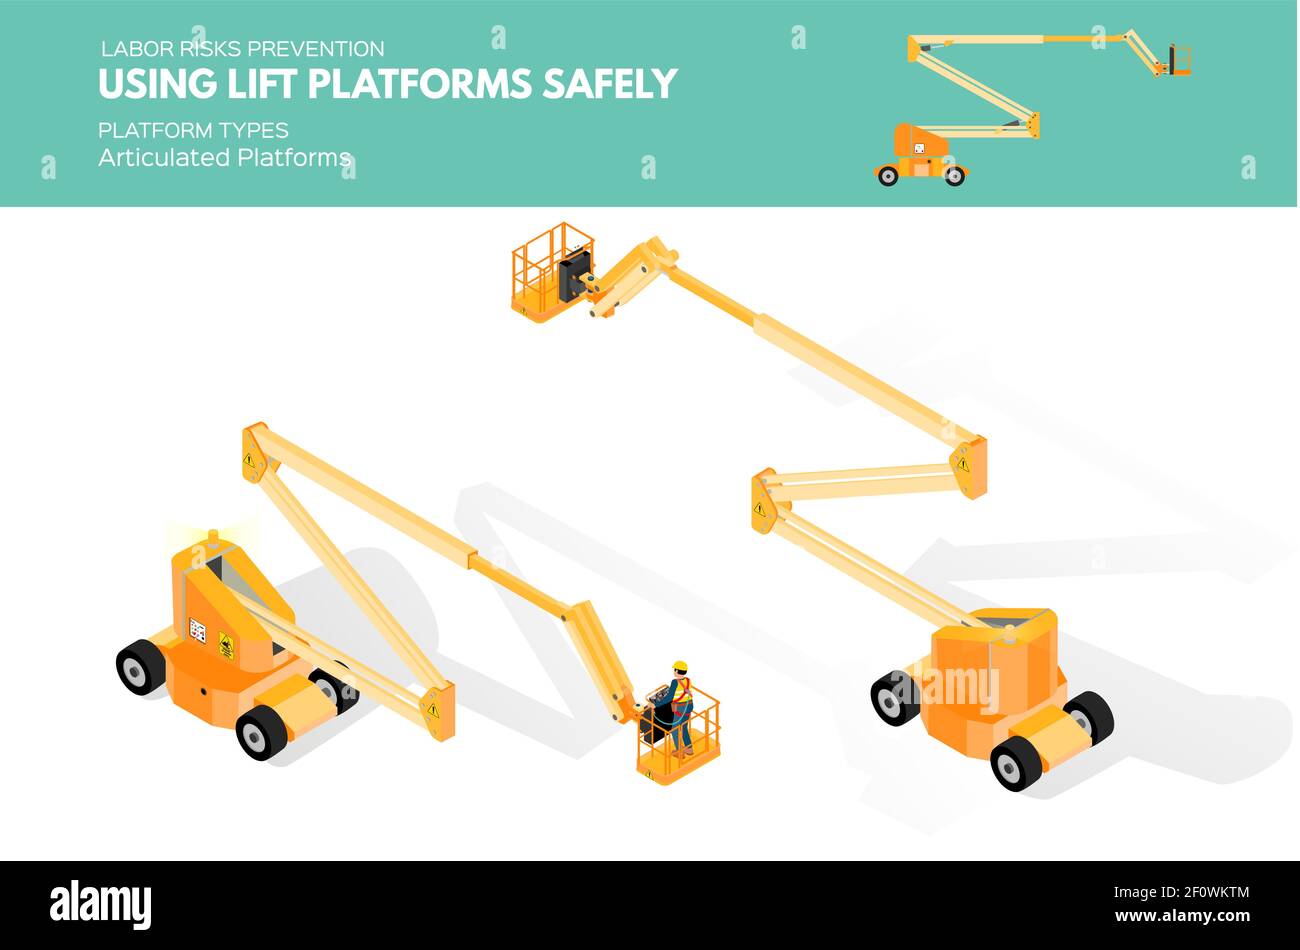 Isometrisch weiß isolierte Aufzugsplattformen Arbeitsrisiko Prävention Informationen über Plattformtypen auf Gelenkplattform Stock Vektor